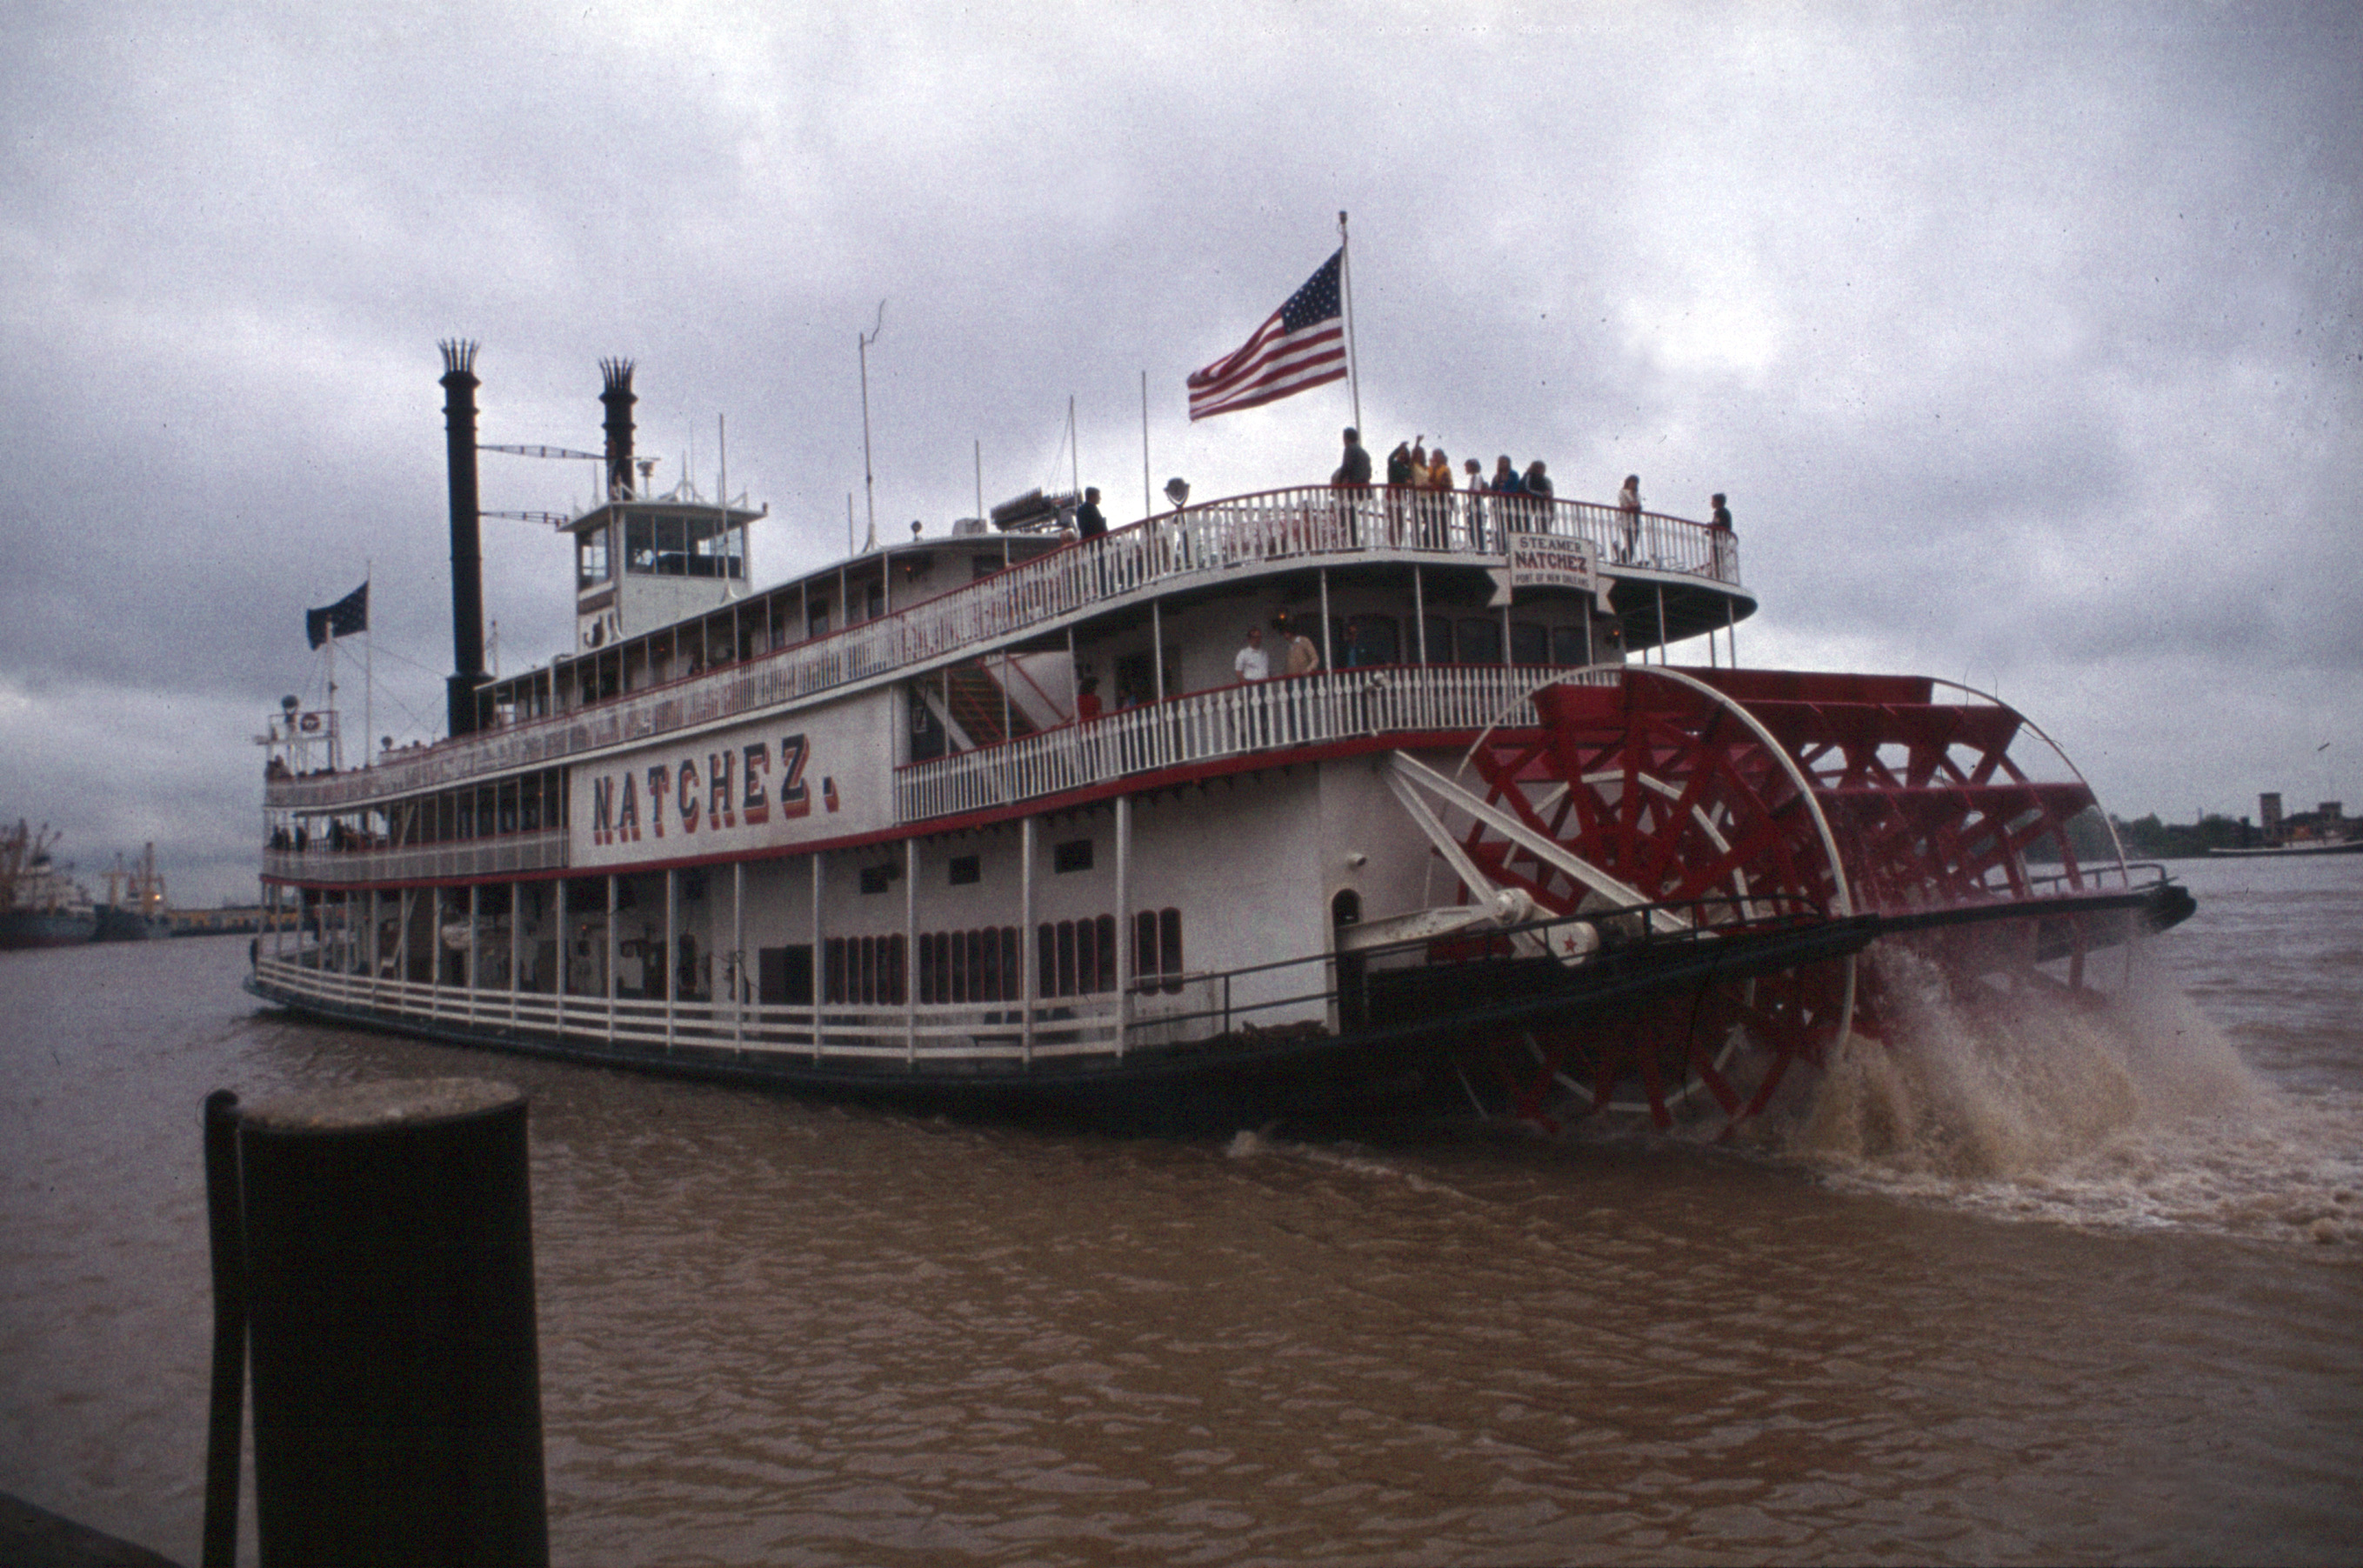 https://upload.wikimedia.org/wikipedia/commons/e/e1/New_Orleans-04-Mississippi-Dampfer-1980-gje.jpg